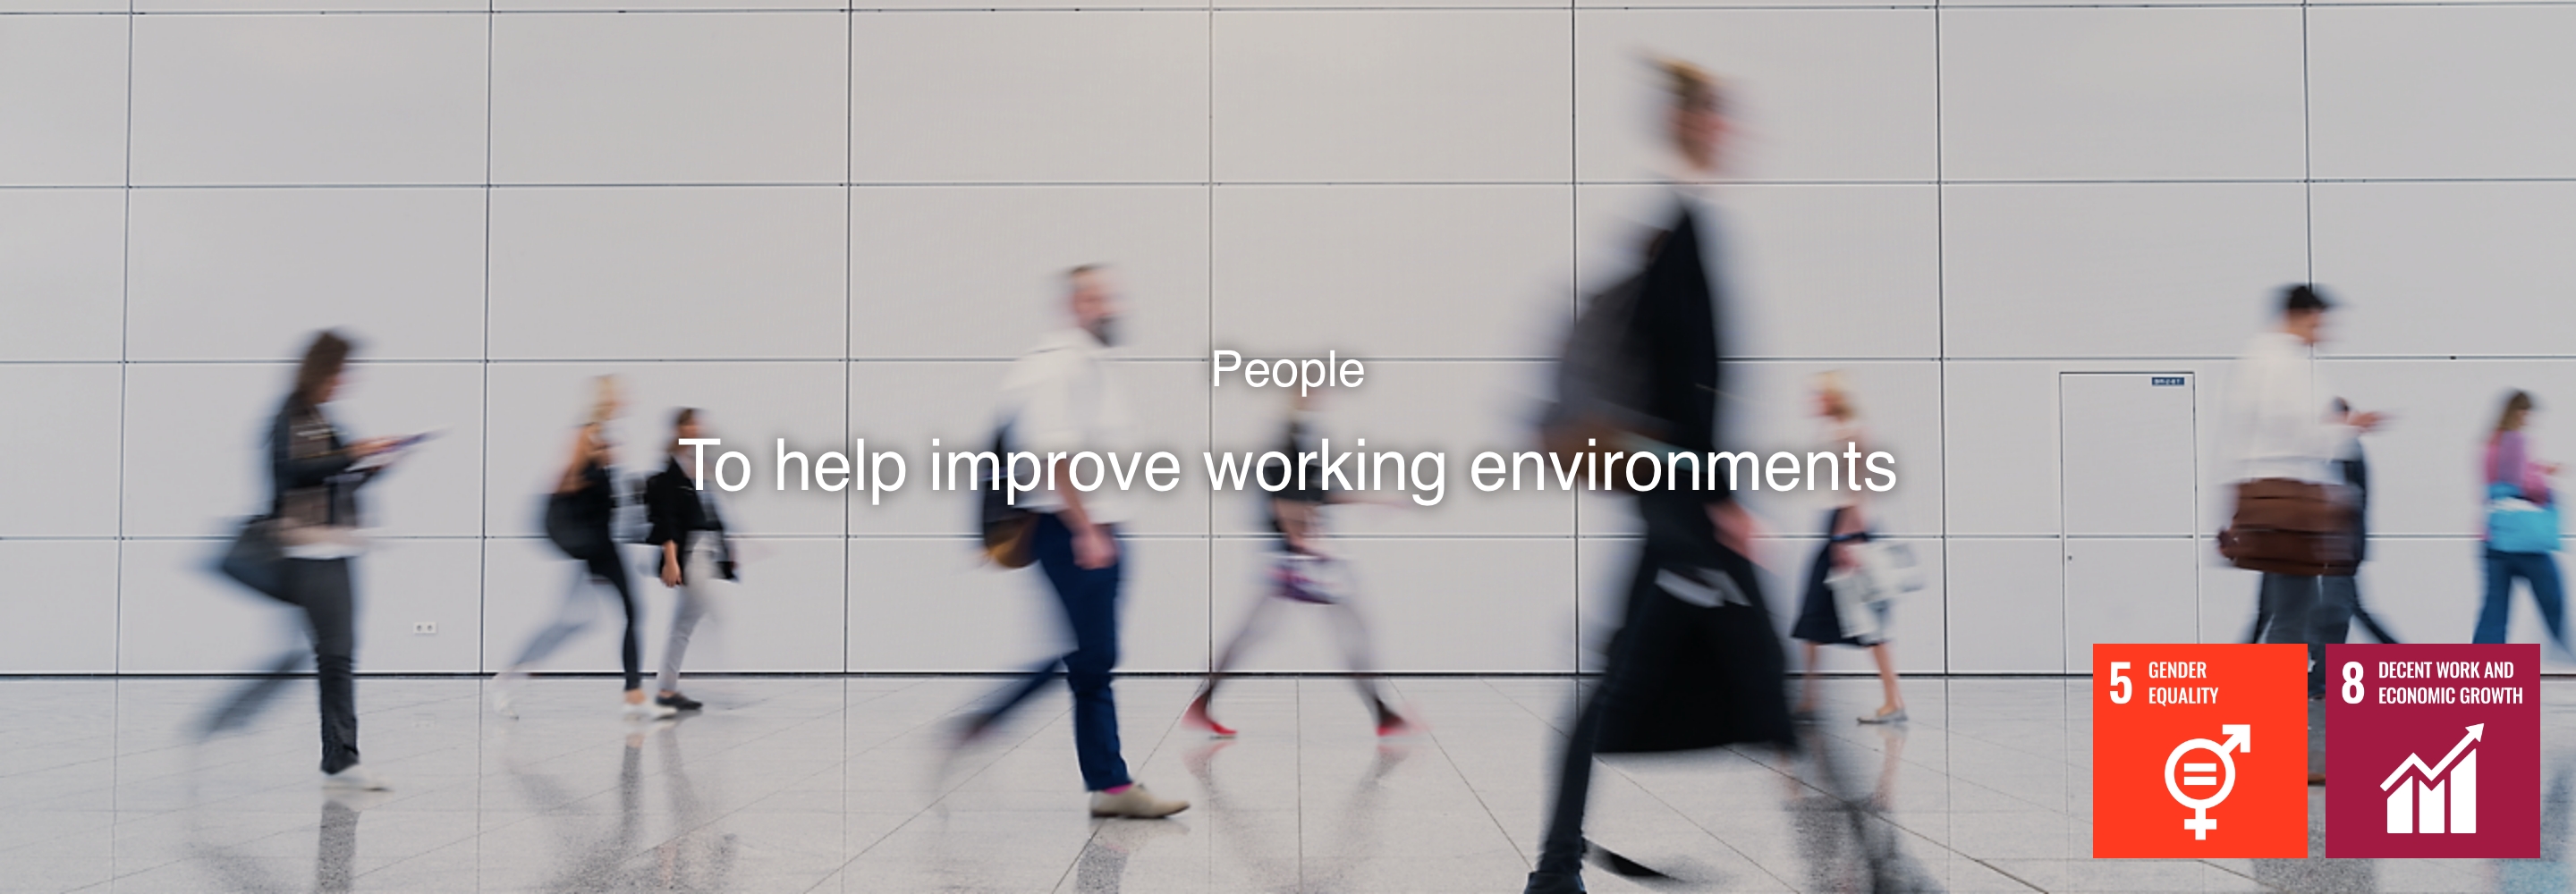 Personas Ayudar a mejorar los ambientes de trabajo